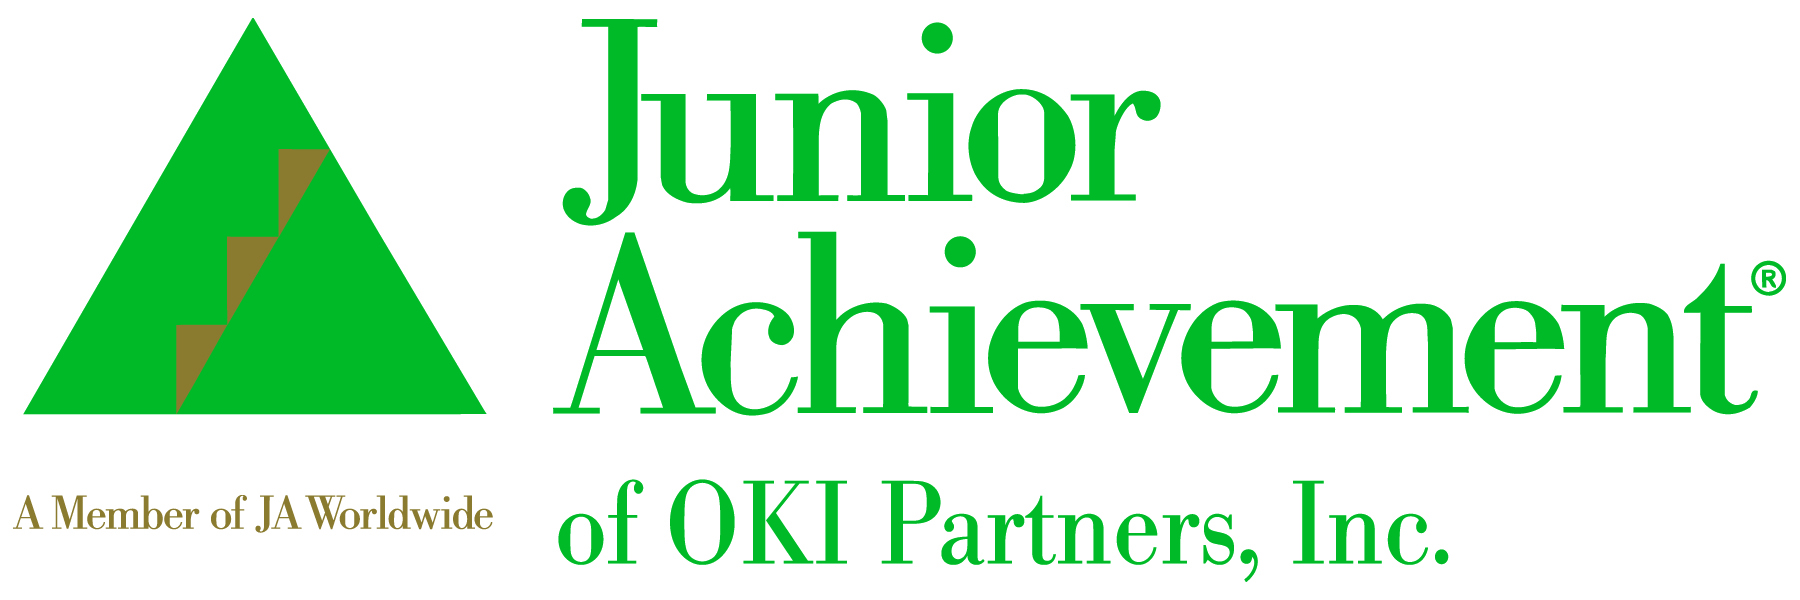 Junior Achievement of OKI Partners, Inc.